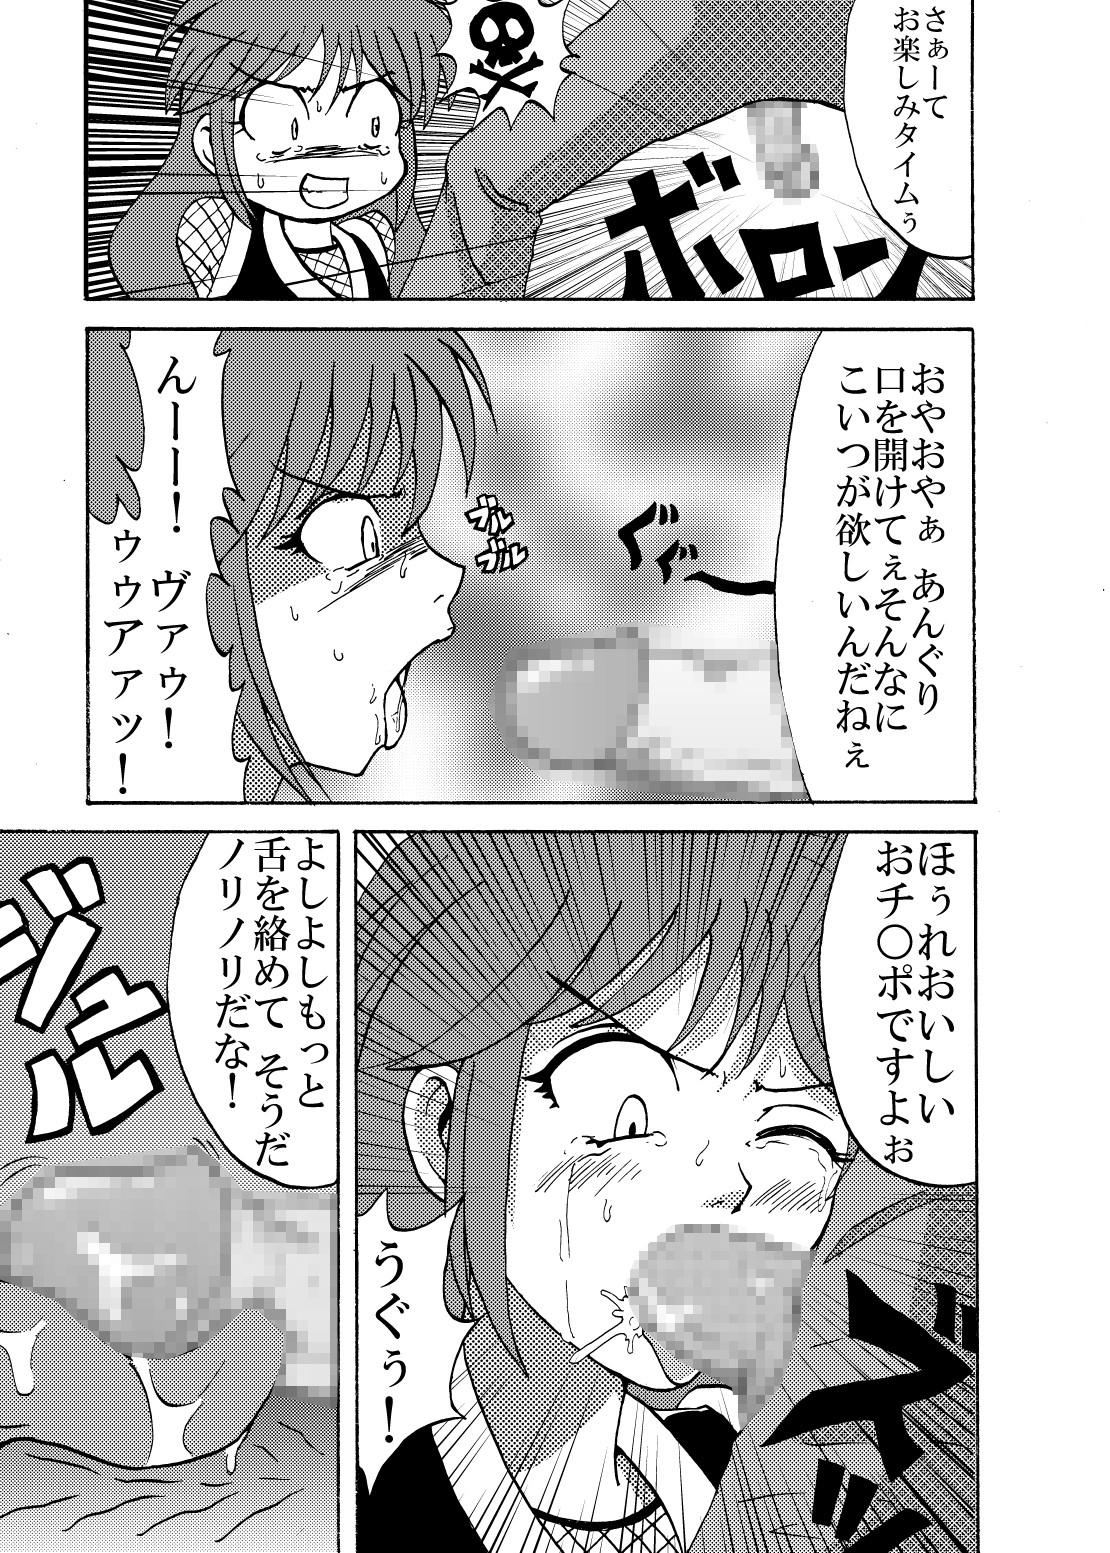 Chica Shinobi Gunrouden II - Ganbare goemon Petite Porn - Page 7